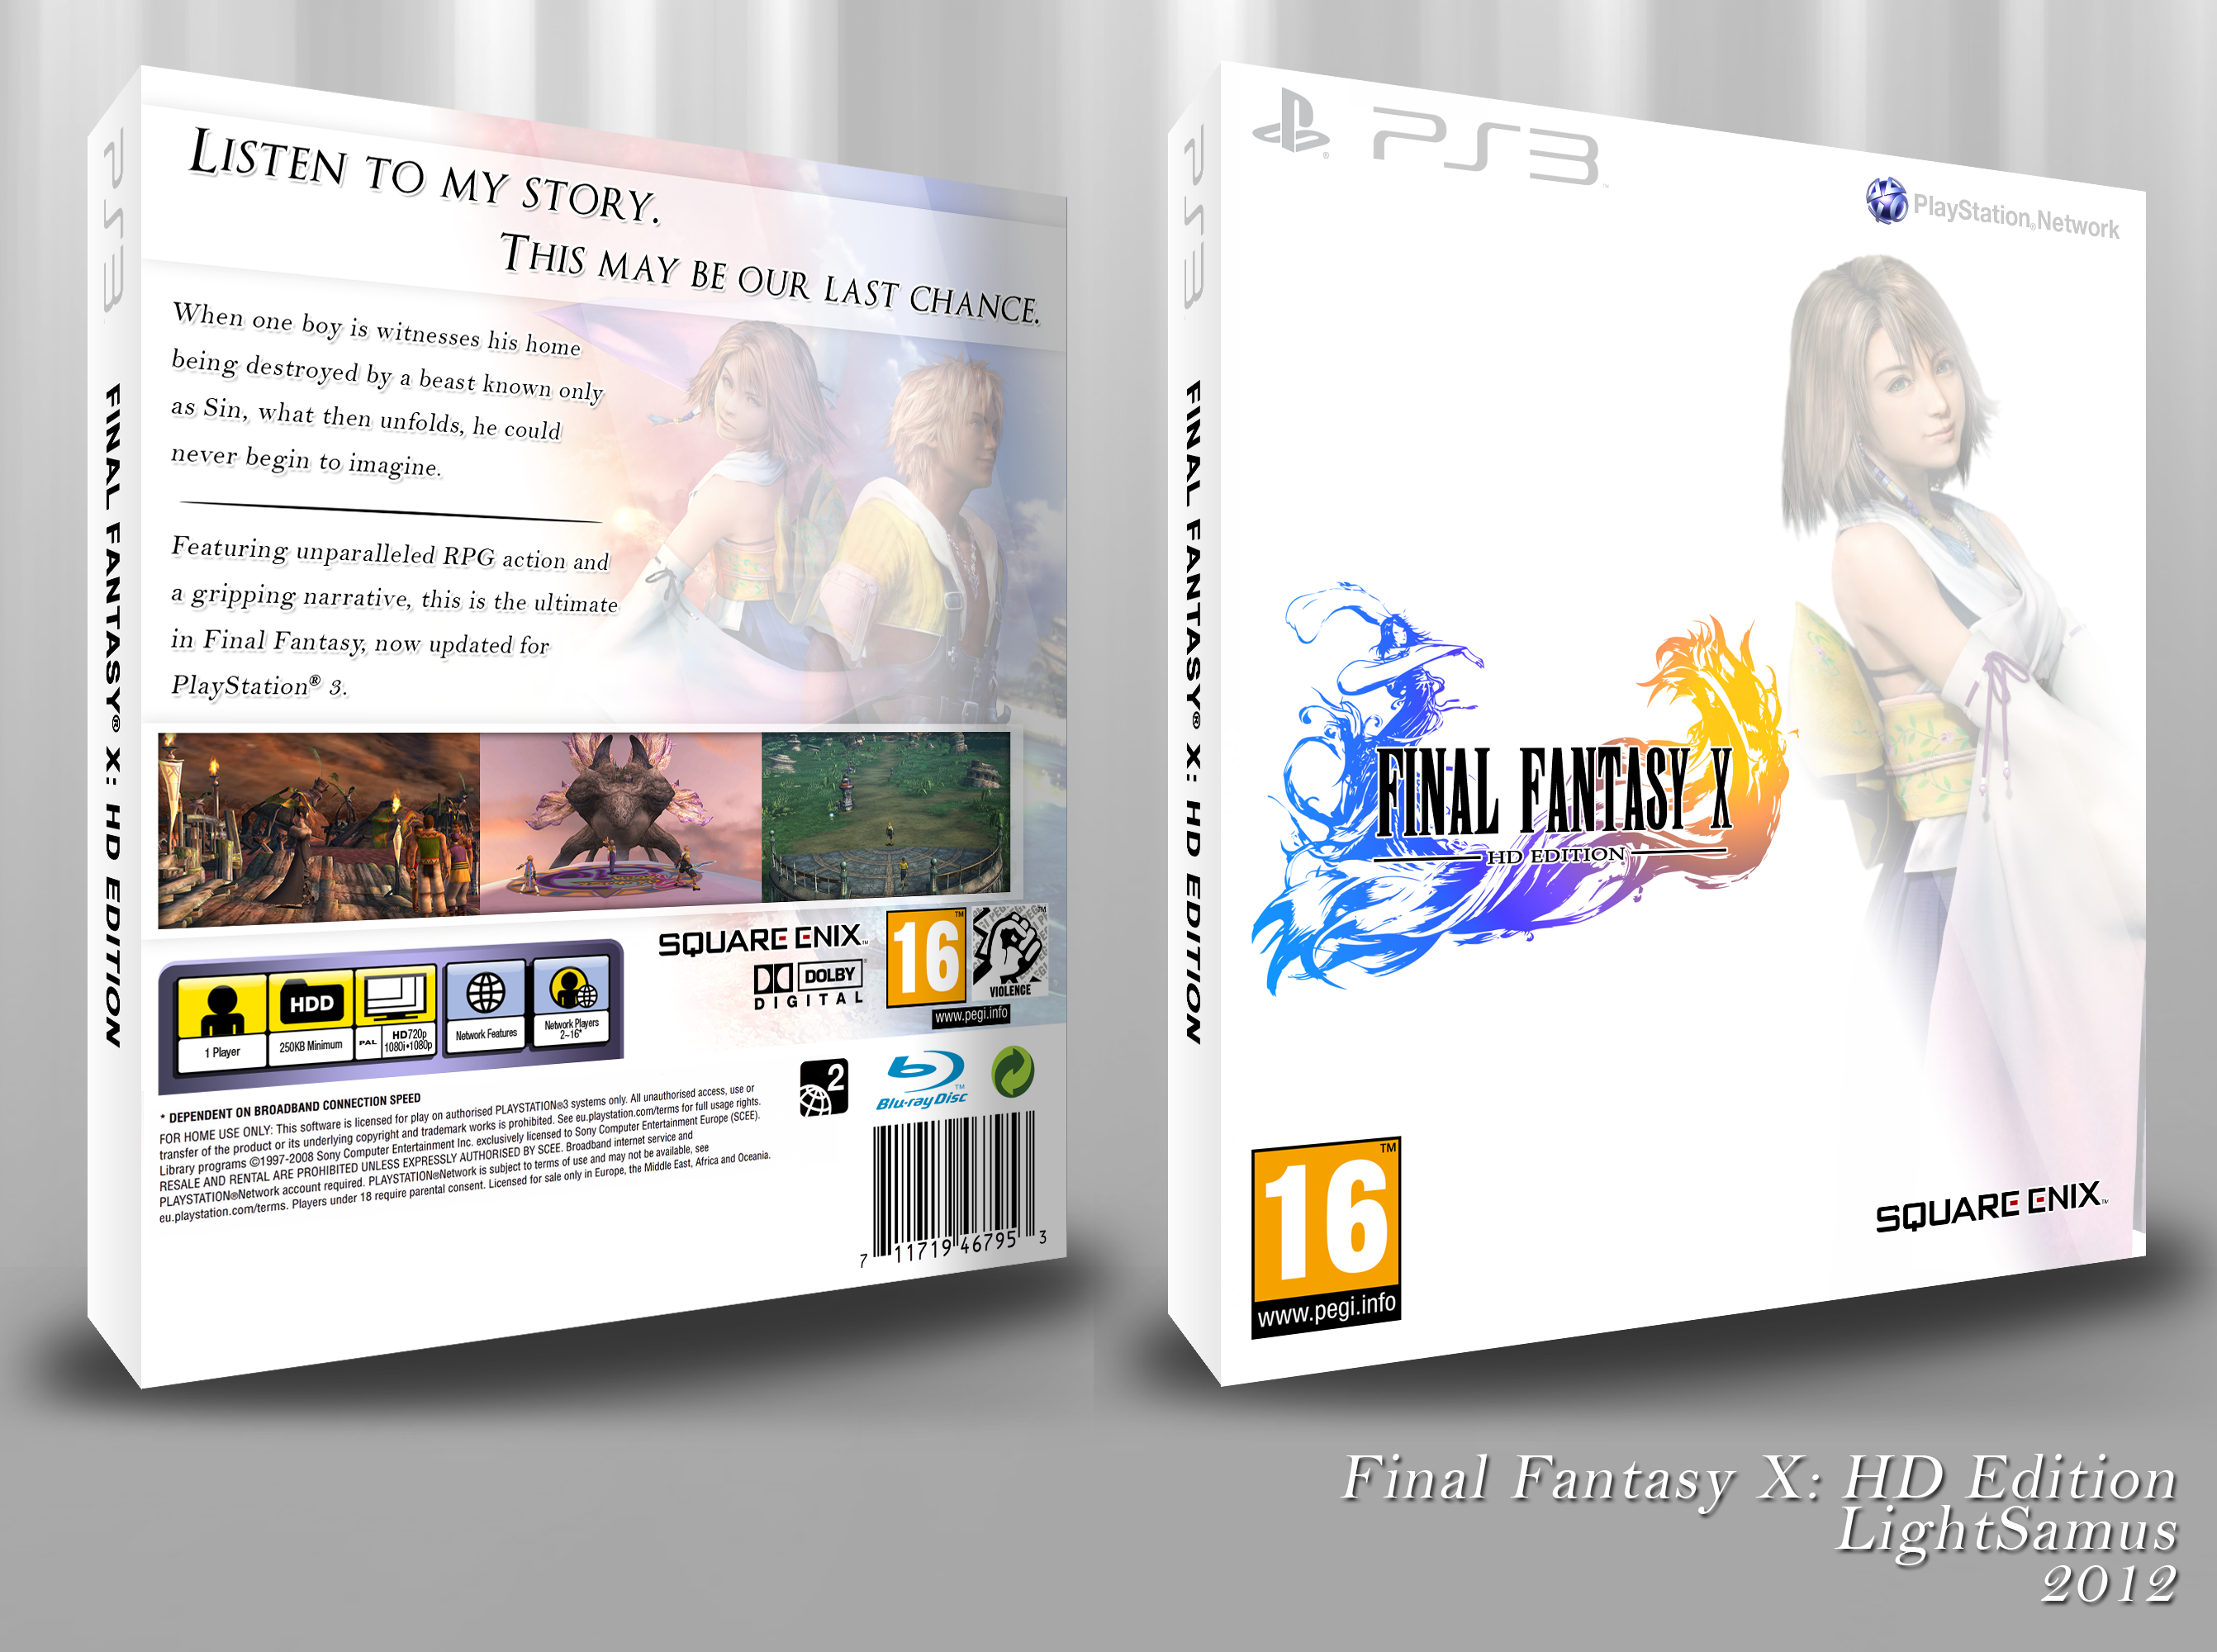 Final Fantasy X: HD Edition box cover